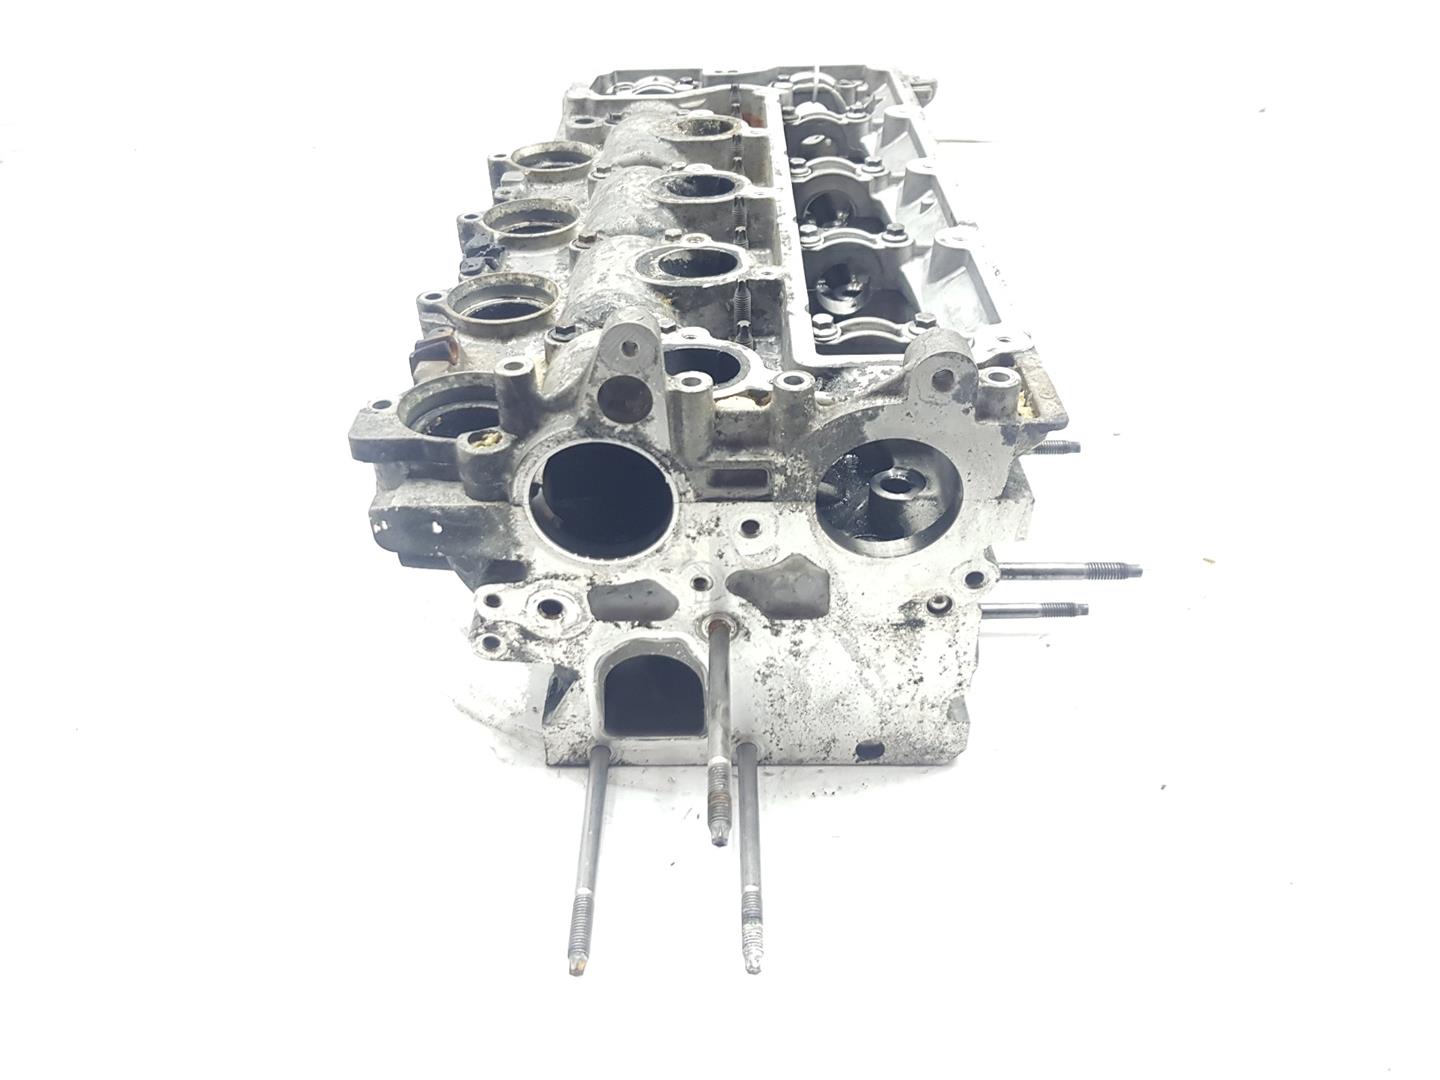 RENAULT Megane 3 generation (2008-2020) Engine Cylinder Head 8252347, 9656823180 19799046